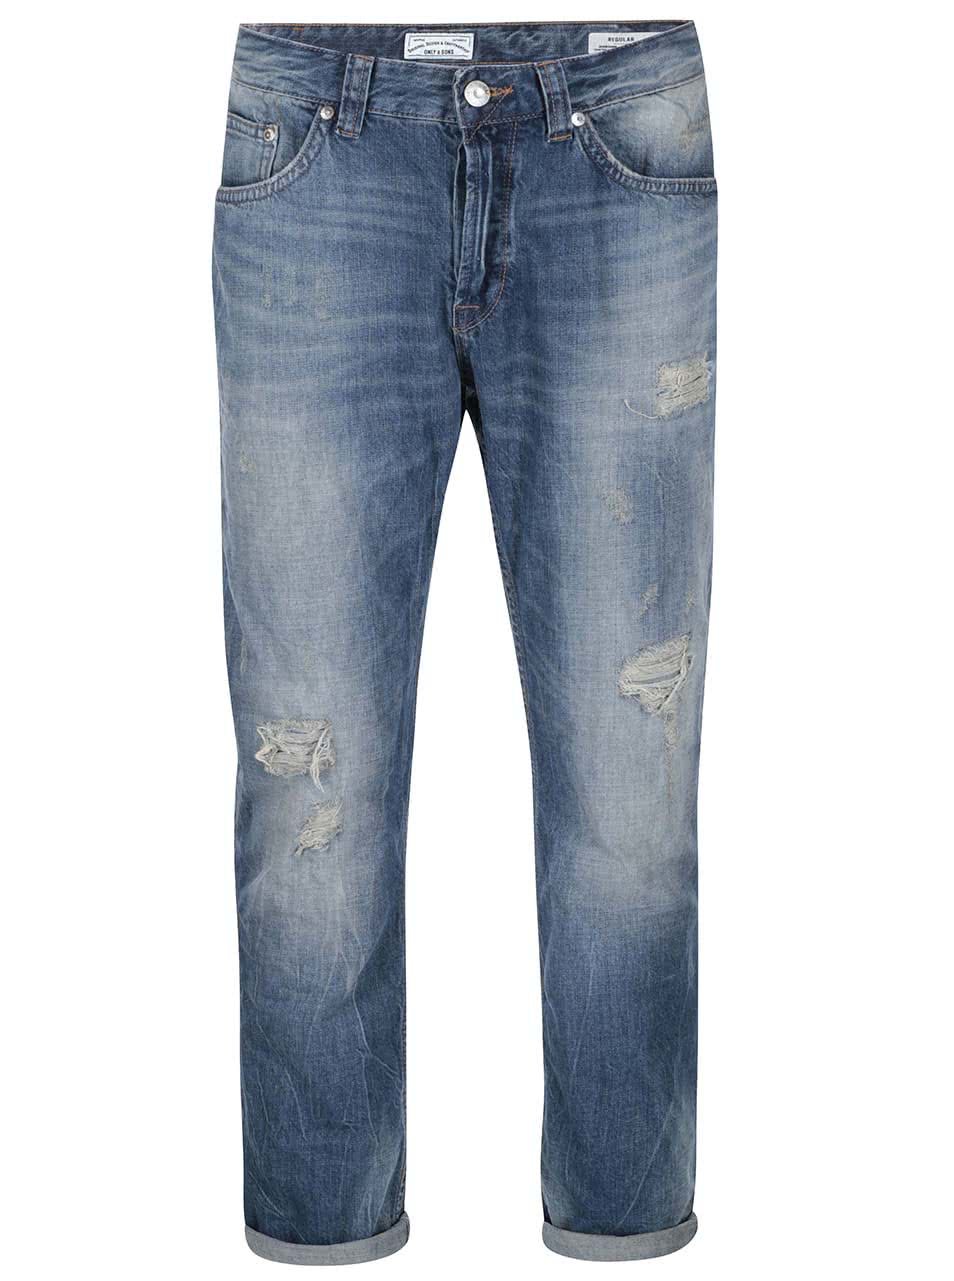 Modré džíny s potrhaným efektem ONLY & SONS Dips